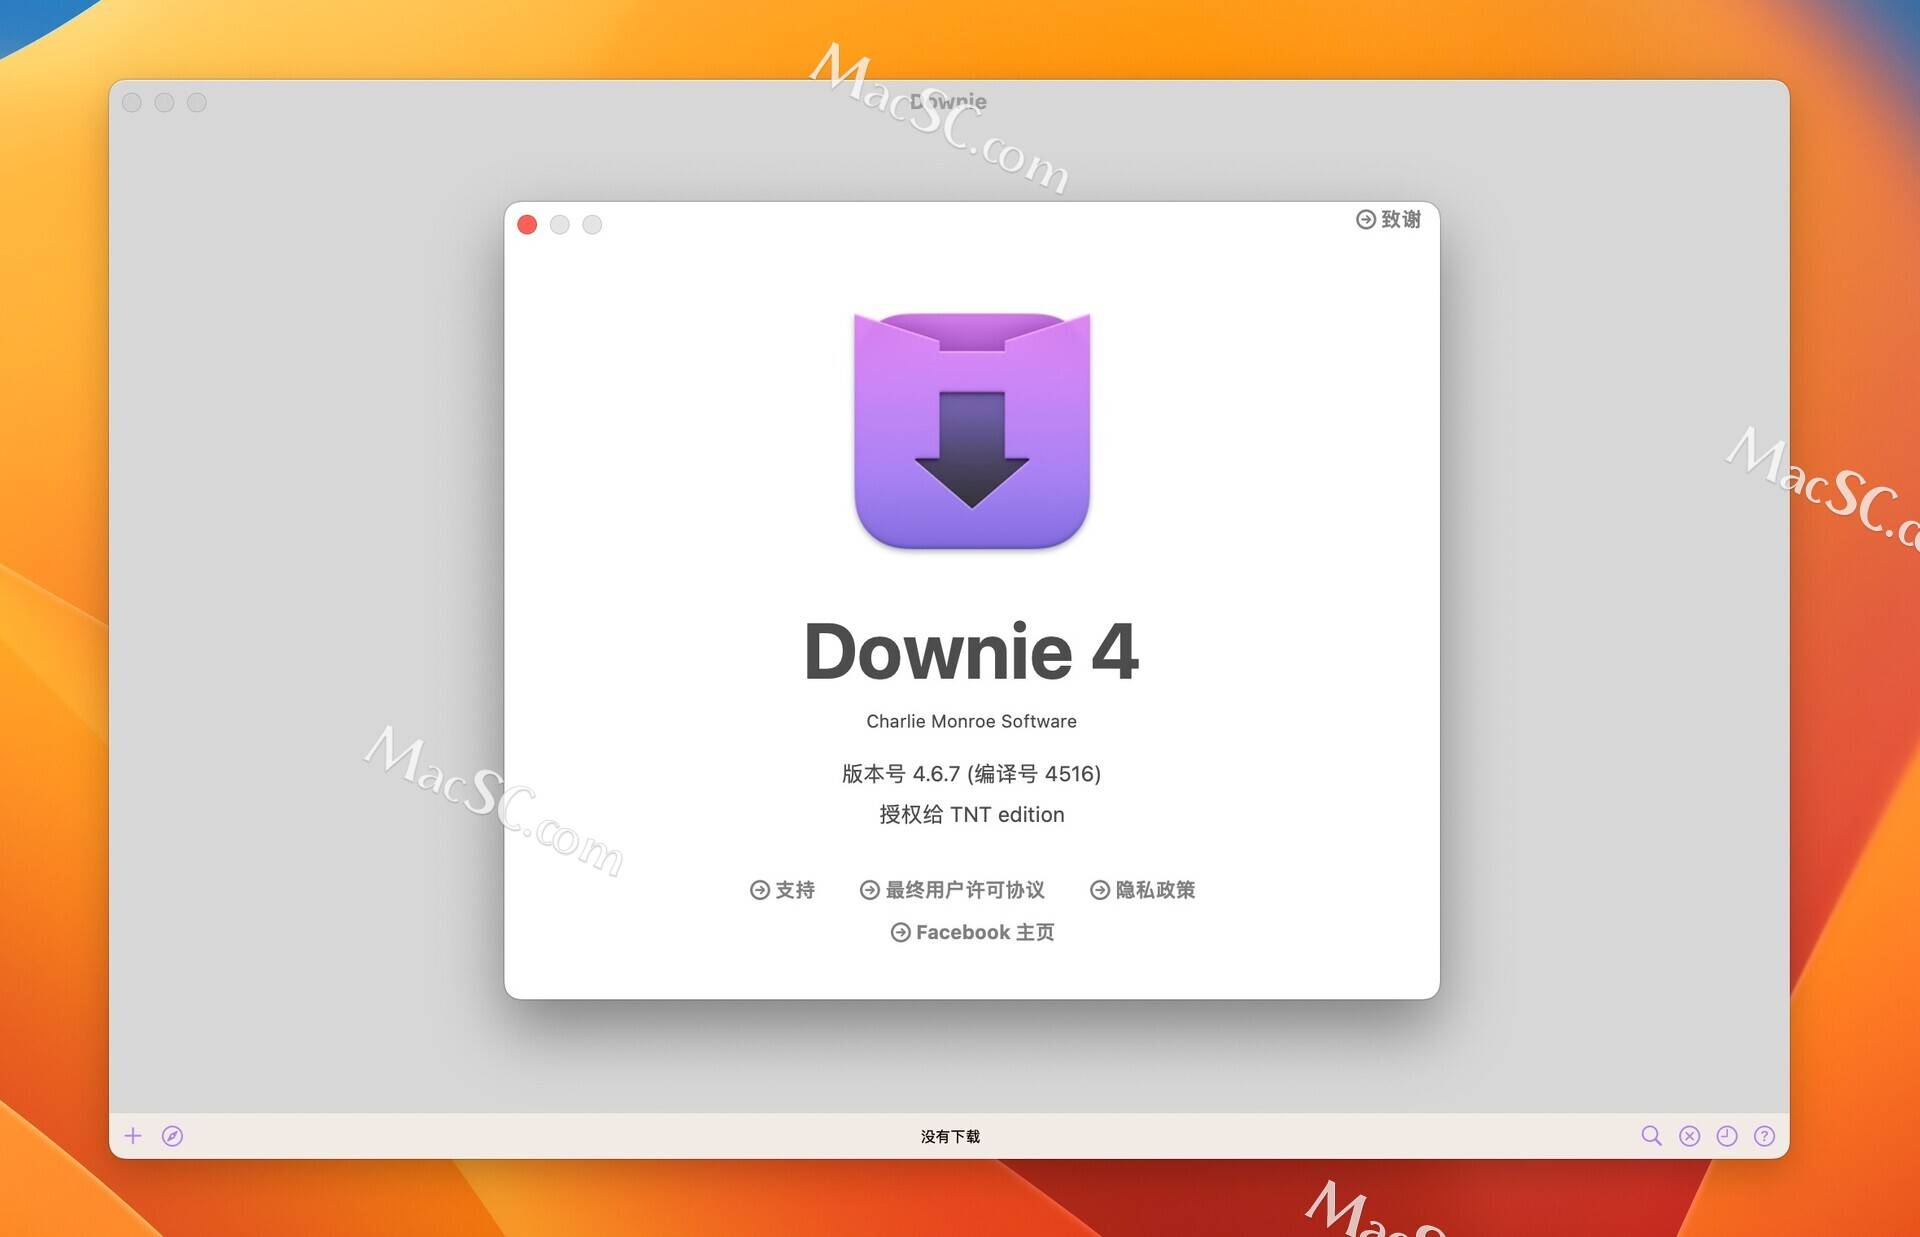 苹果手机版优酷小窗口播放:mac电脑「巨强视频下载工具amp;支持巨多视频平台」Downie 4中文版